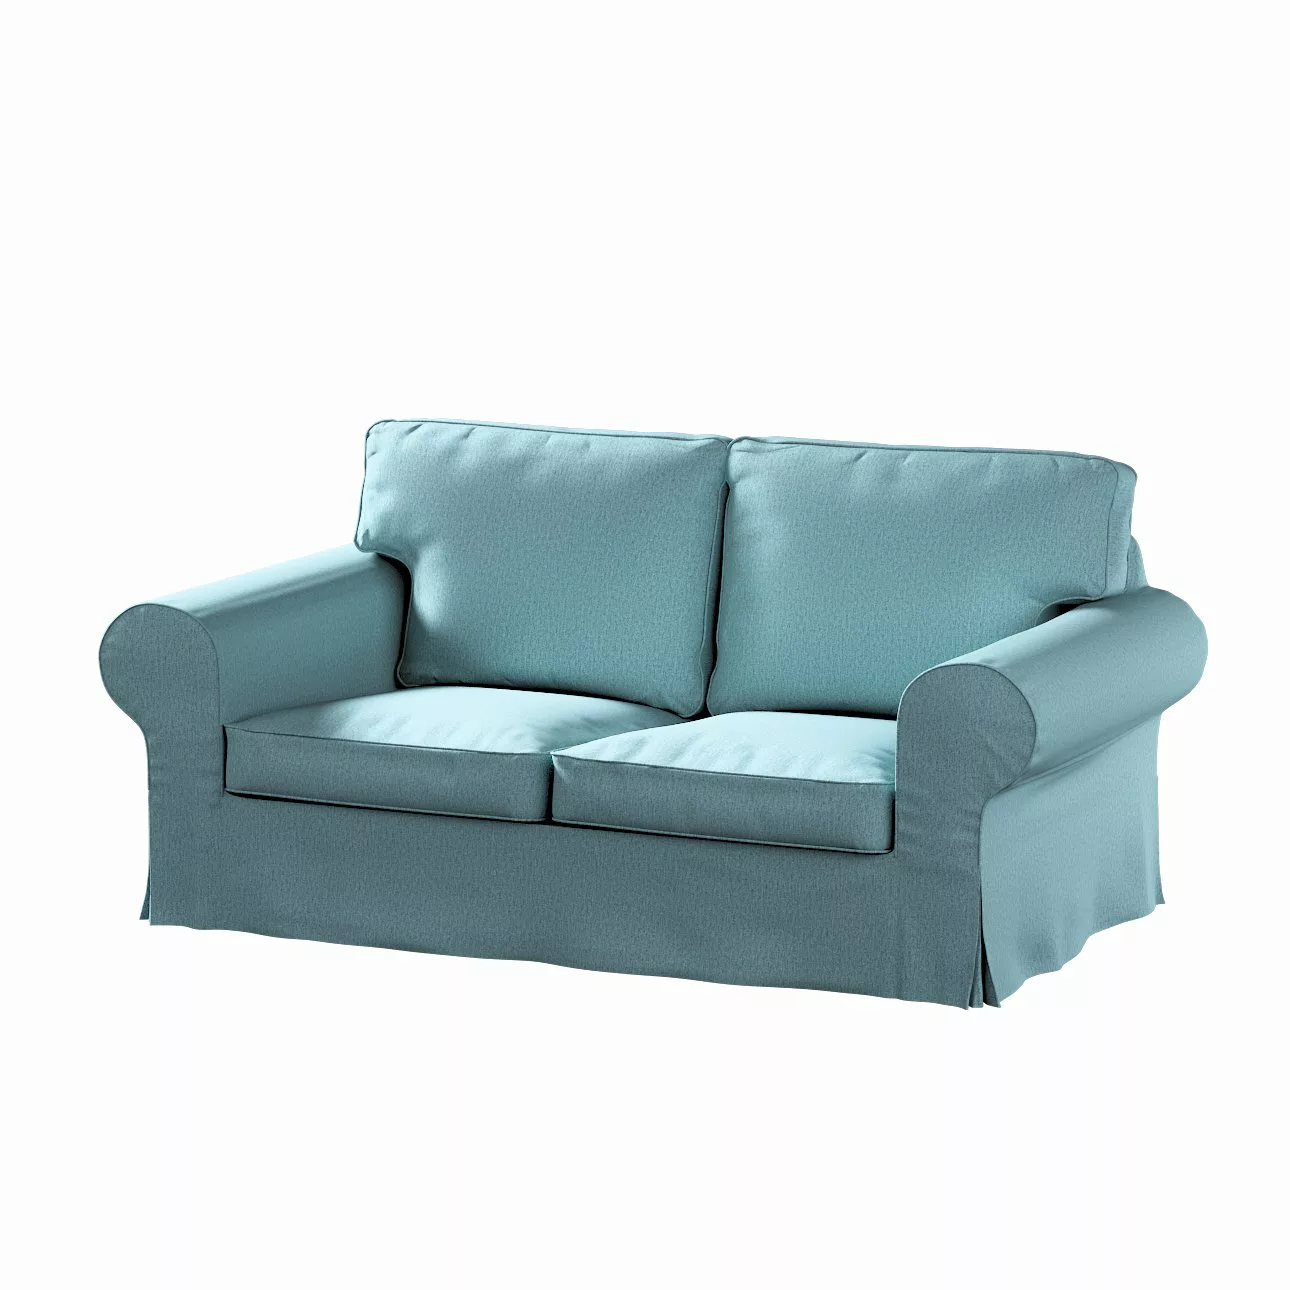 Bezug für Ektorp 2-Sitzer Schlafsofa NEUES Modell, blau, Sofabezug für  Ekt günstig online kaufen